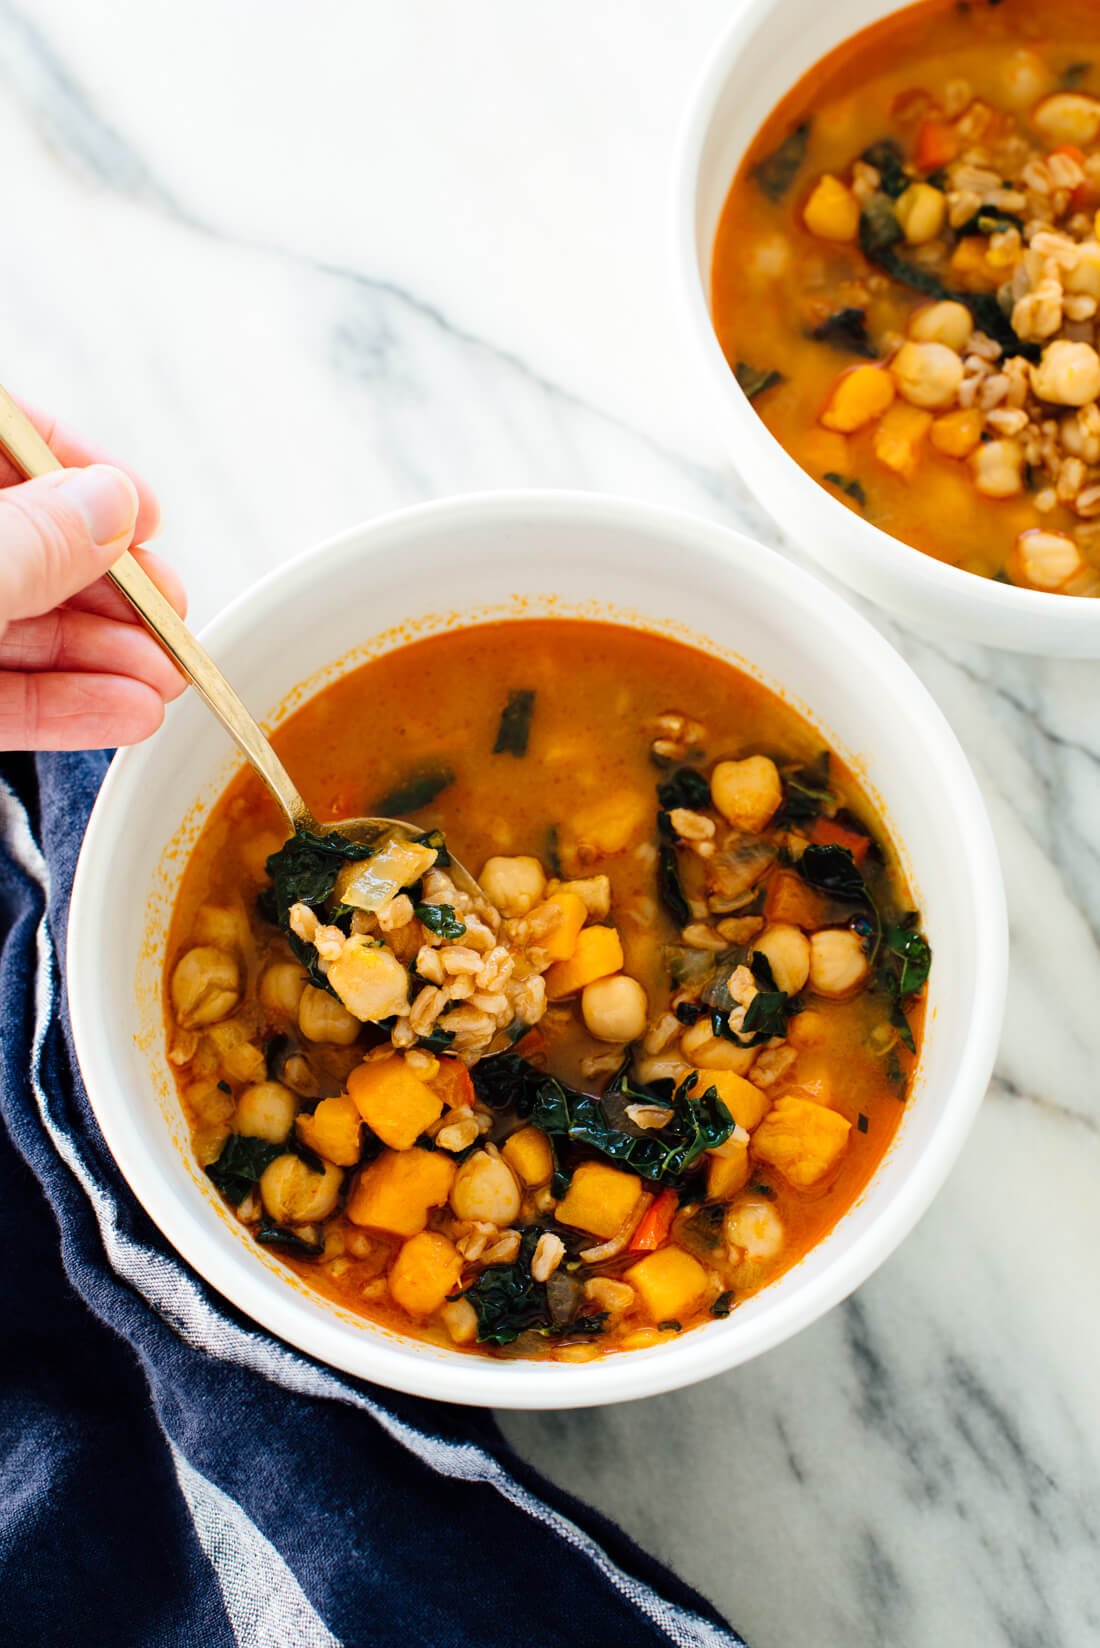 ¡Esta saludable receta de sopa #vegana está hecha con batata, col rizada, farro y garbanzos!